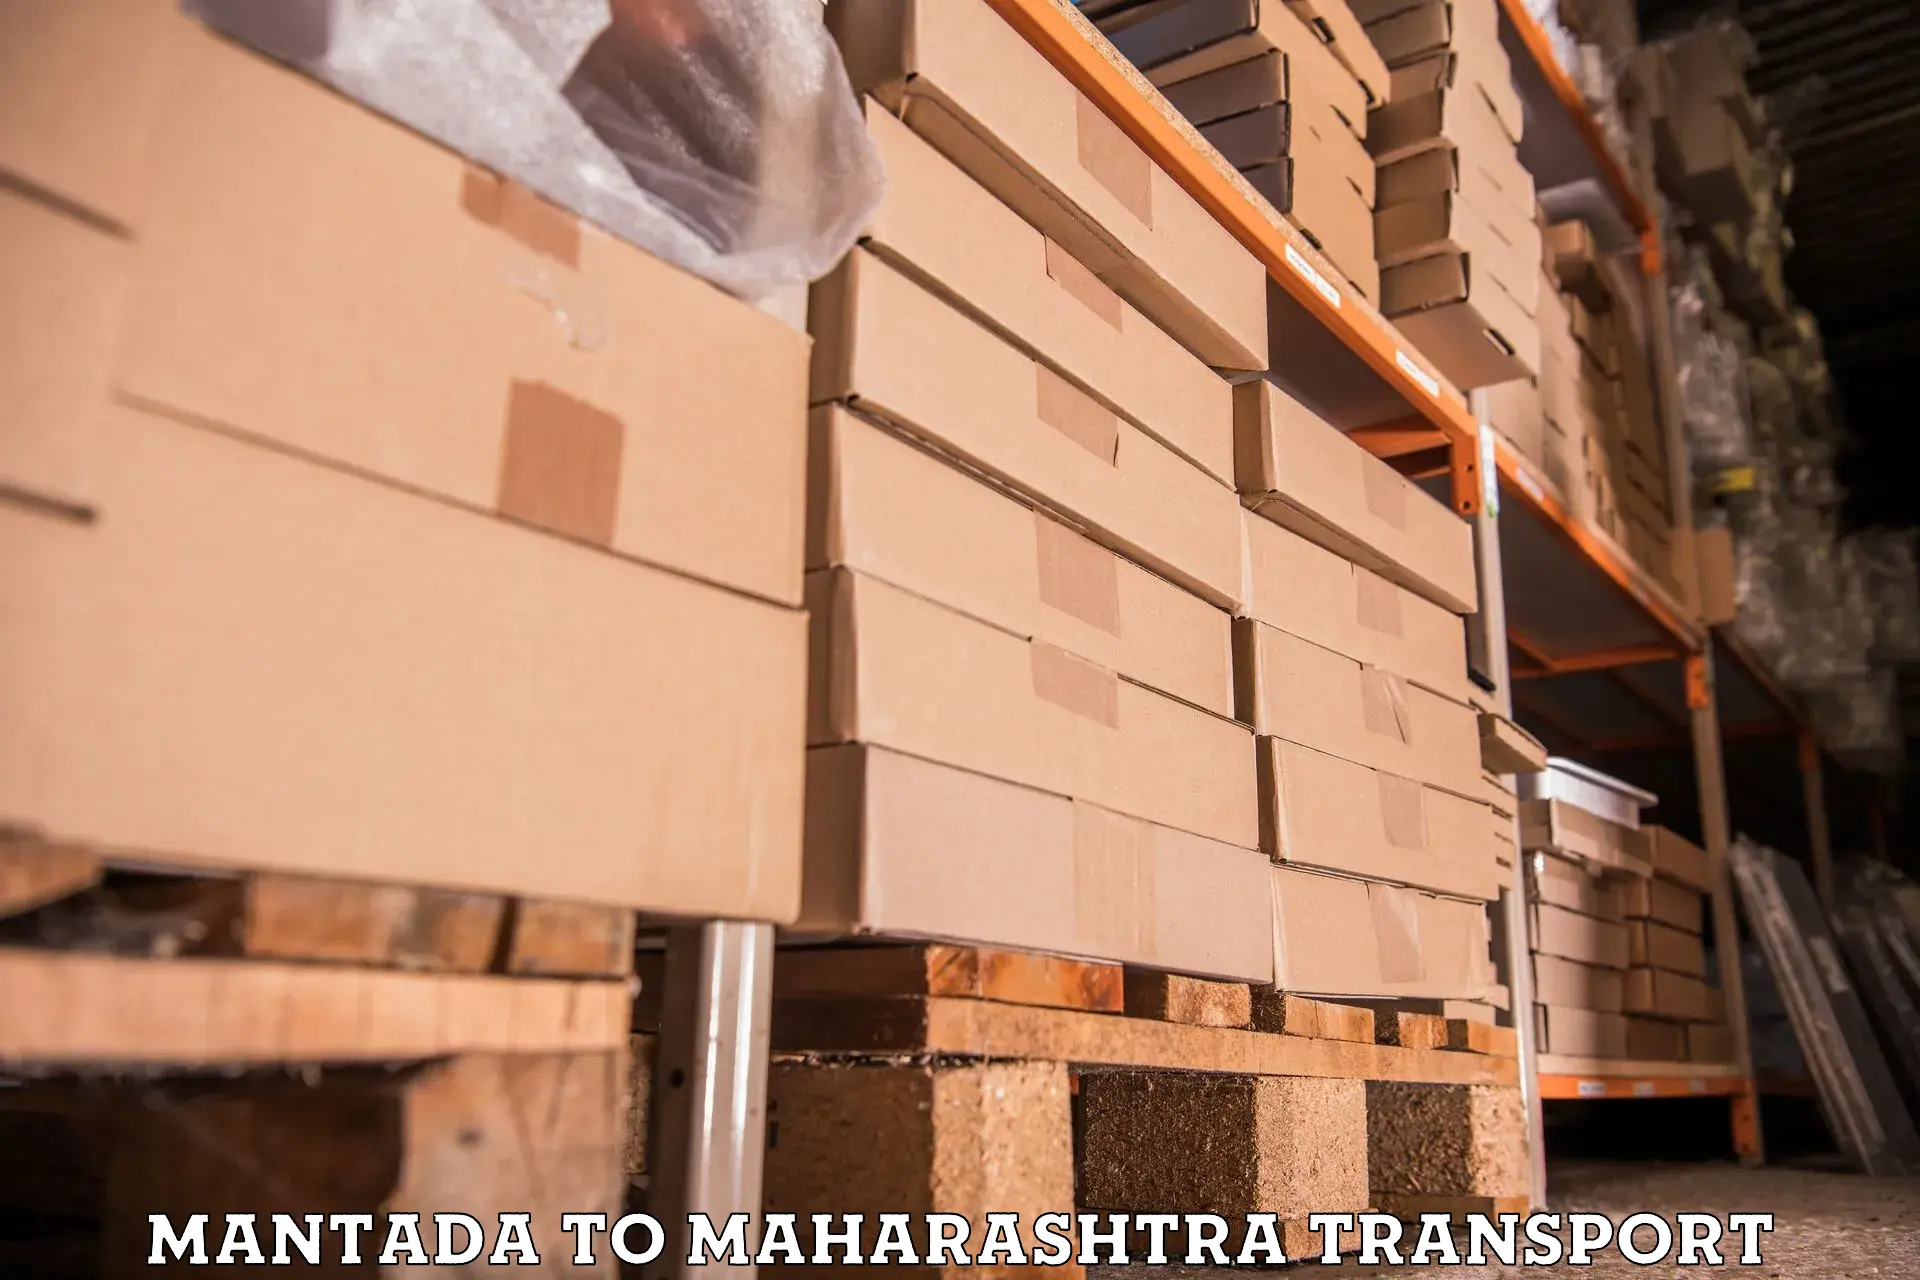 Cargo transport services Mantada to Maharashtra